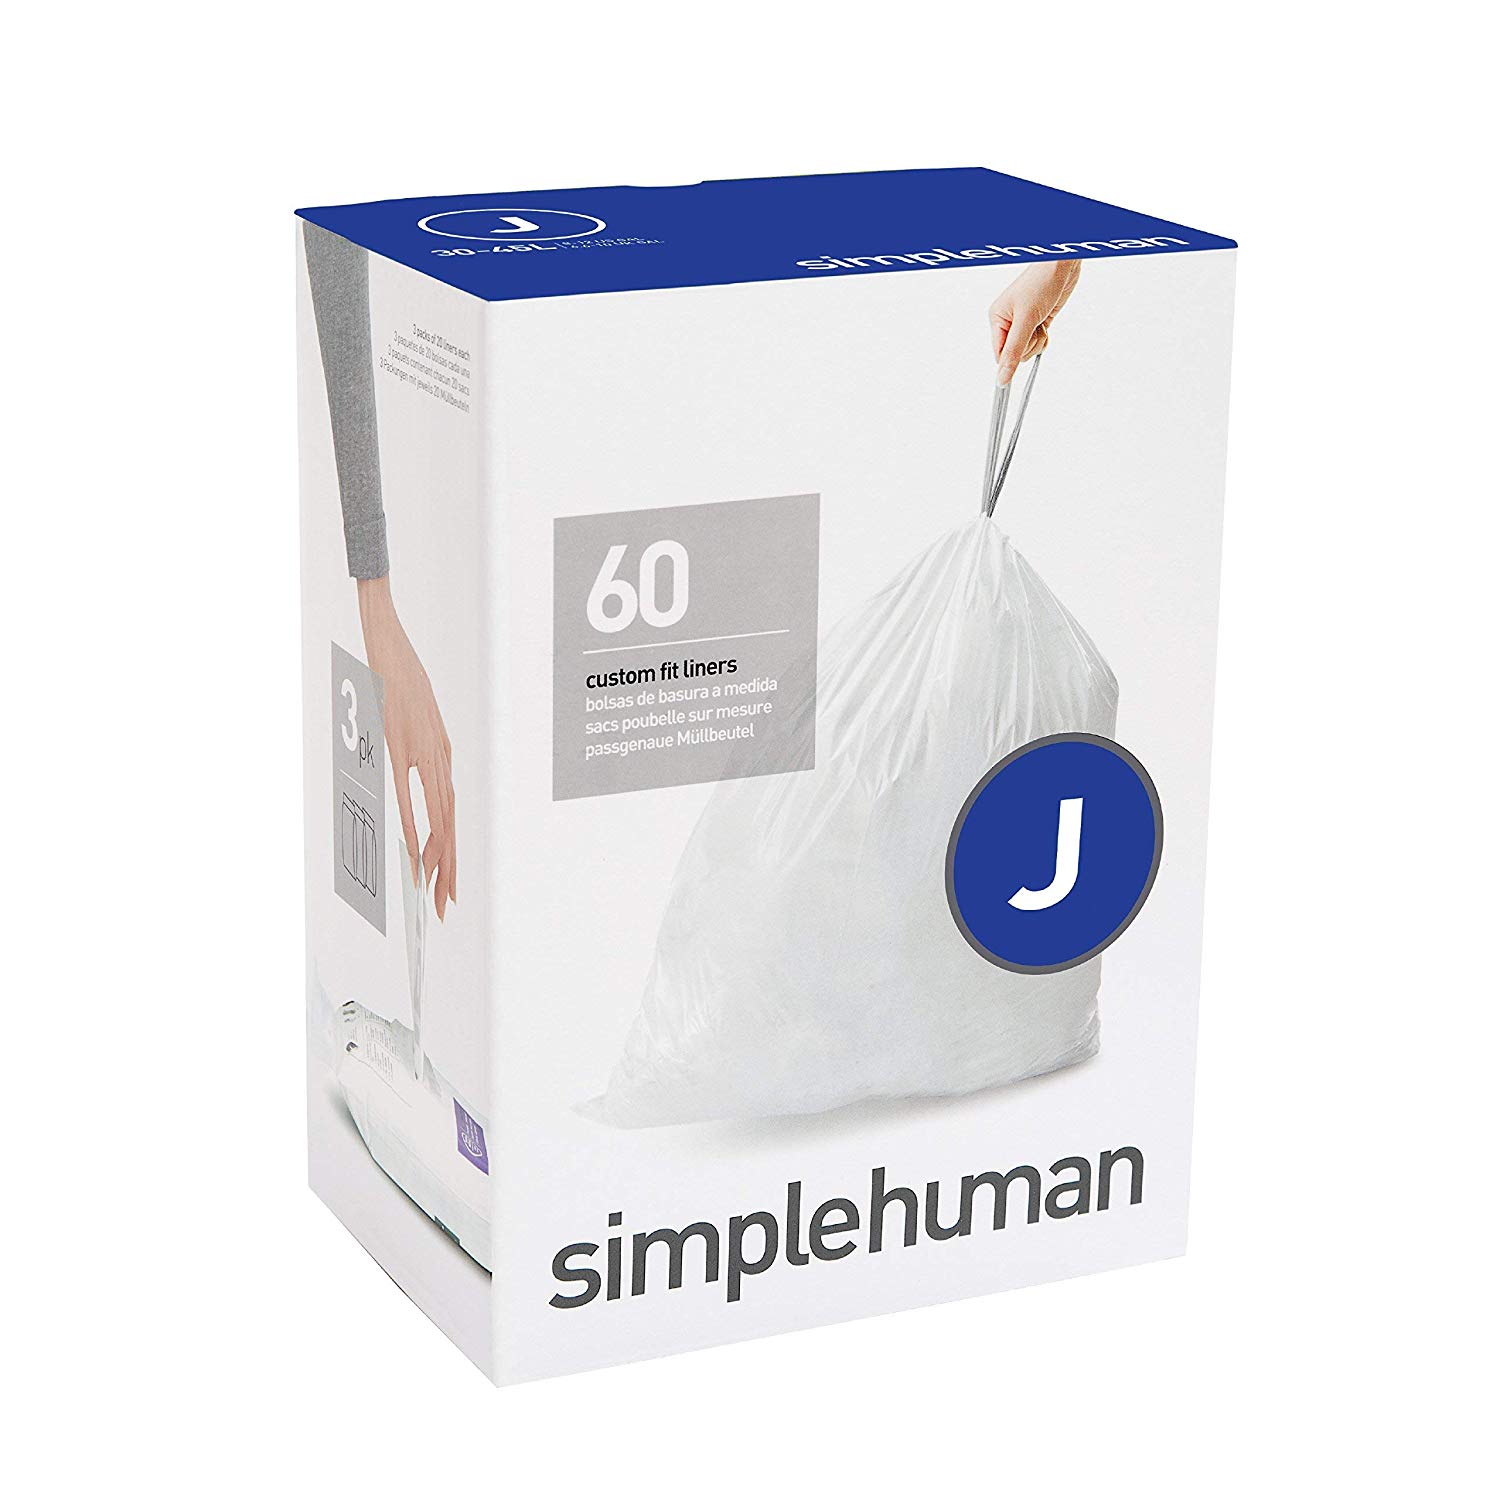 מארז 60 שקיות אשפה לפח 30-45 ליטר (J) דגם Simplehuman - CW0169 - סימפליומן